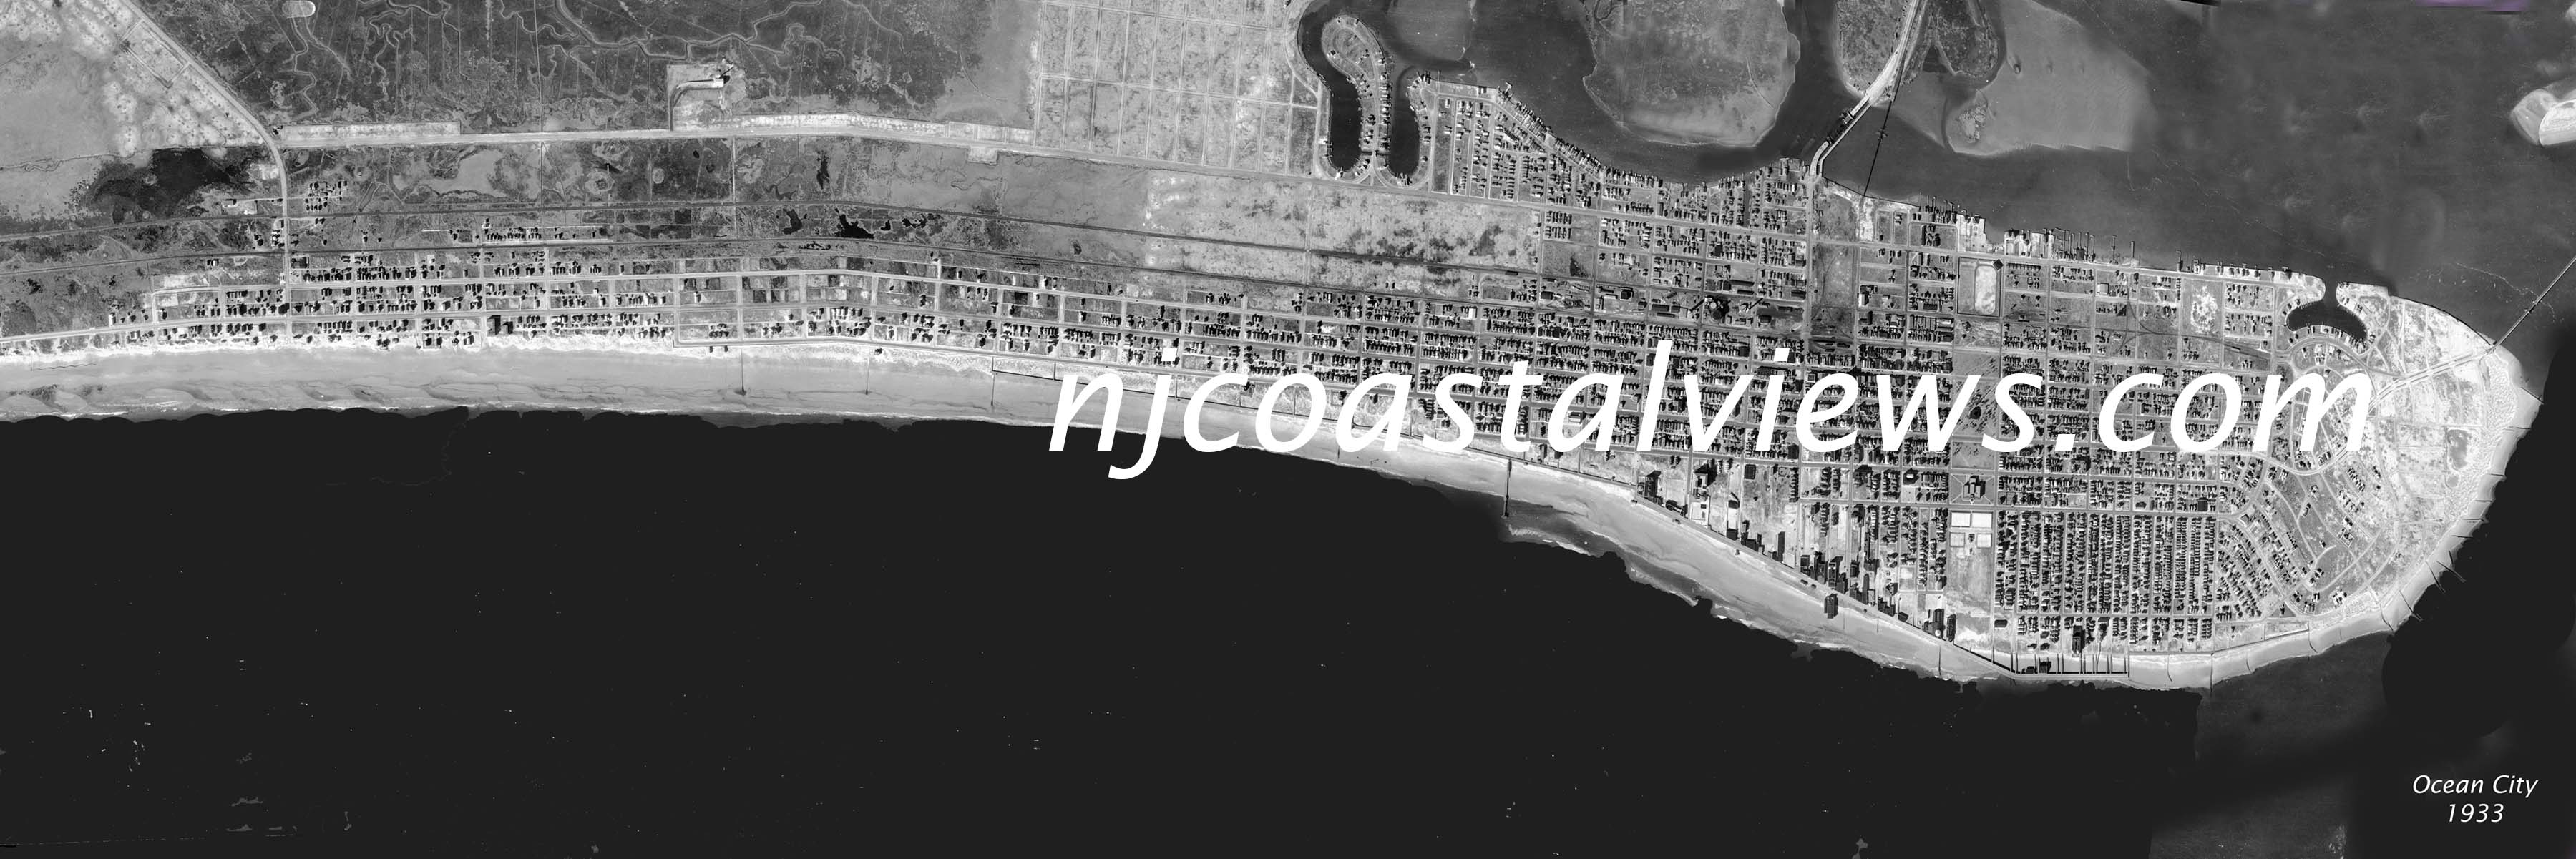 Ocean City 1933 1x3 ft